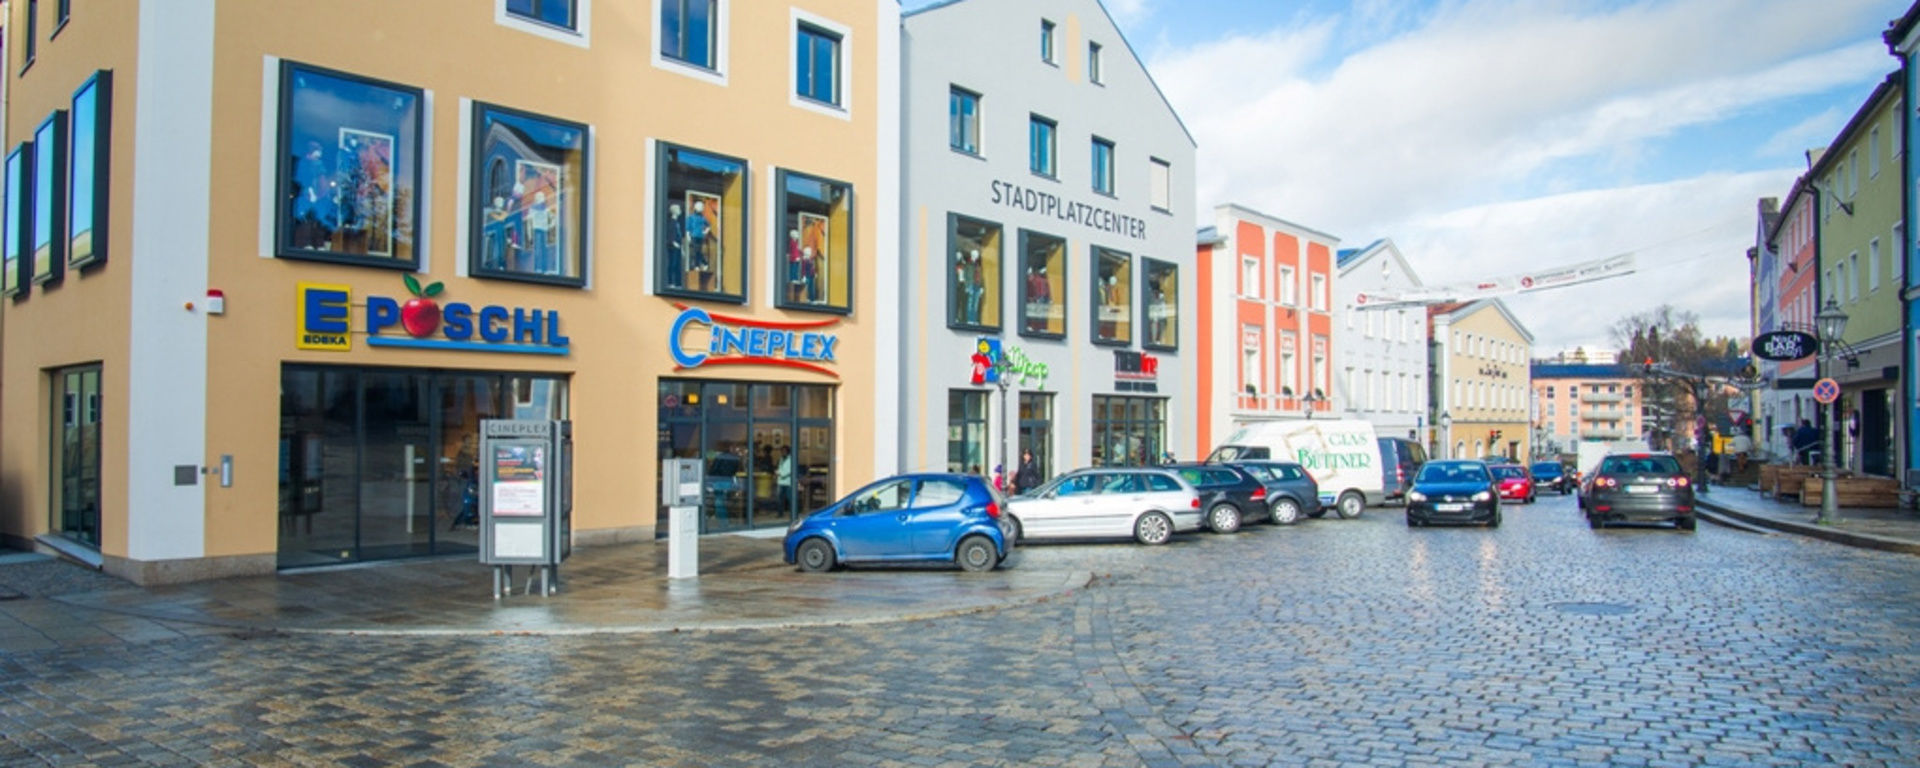 Stadplatz Freyung mit vielen Autos und großen Geschäften und dem Kino